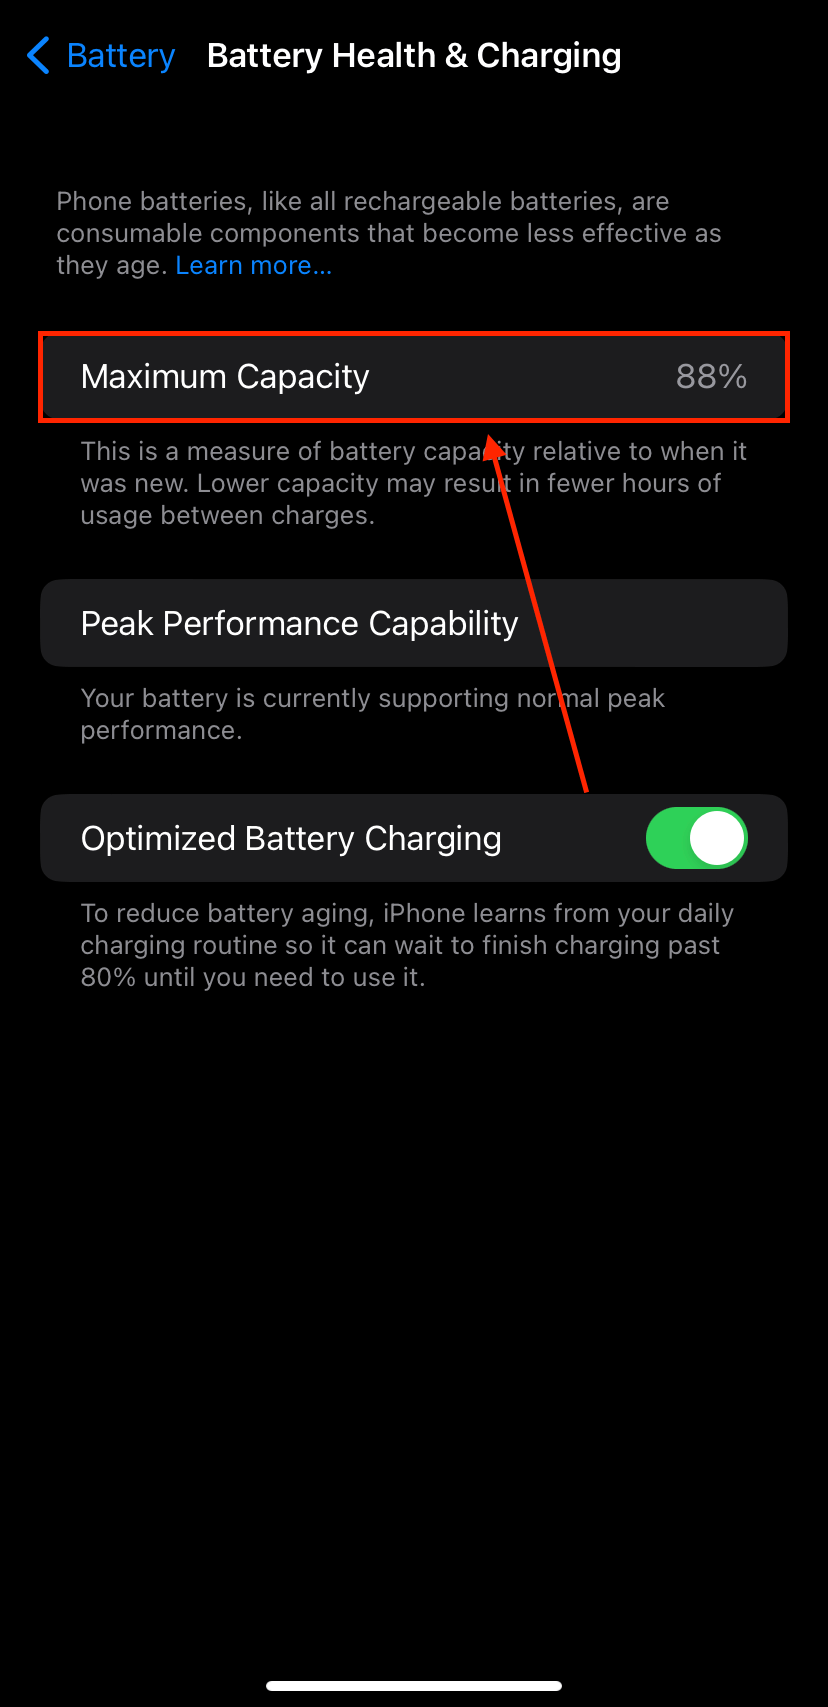 Maximum Capacity feature in iPhone Battery Settings